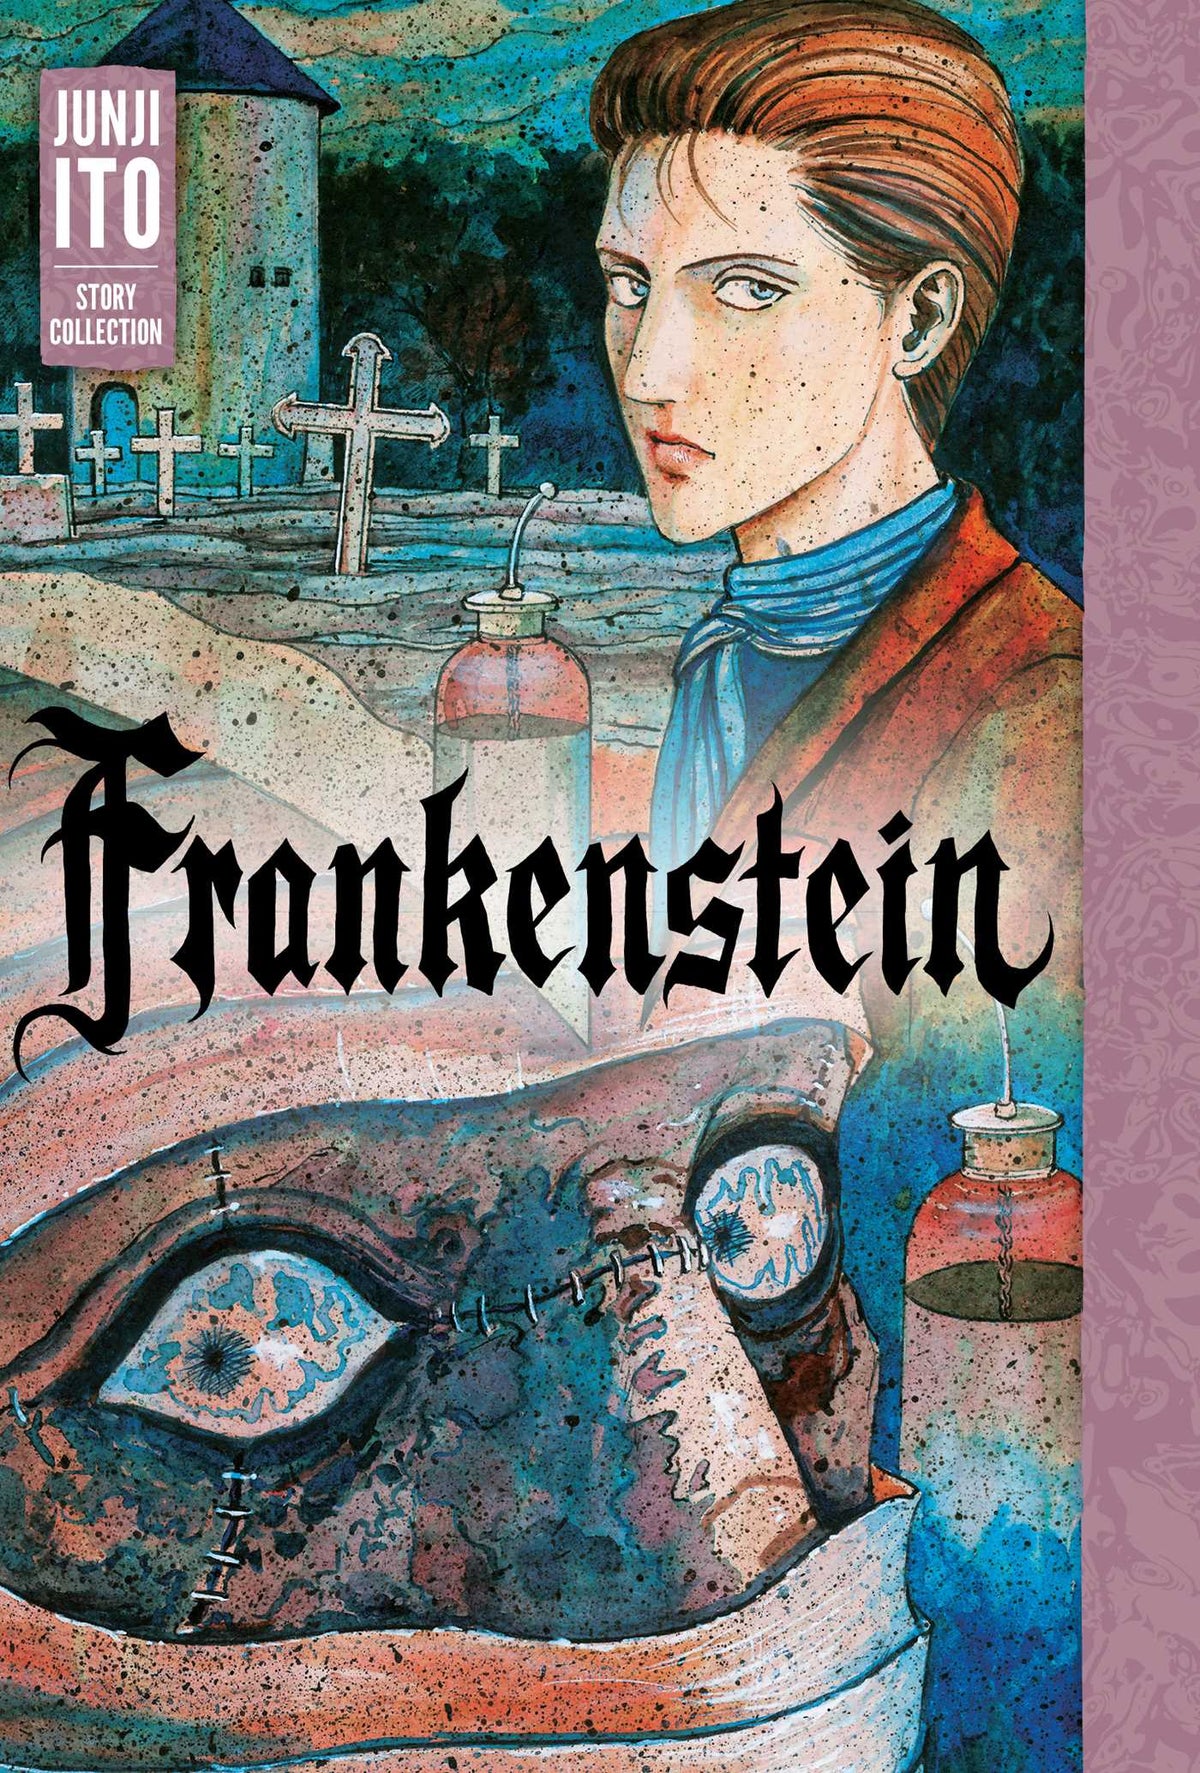 Junji Ito: Story Collection - Frankenstein HC - Third Eye